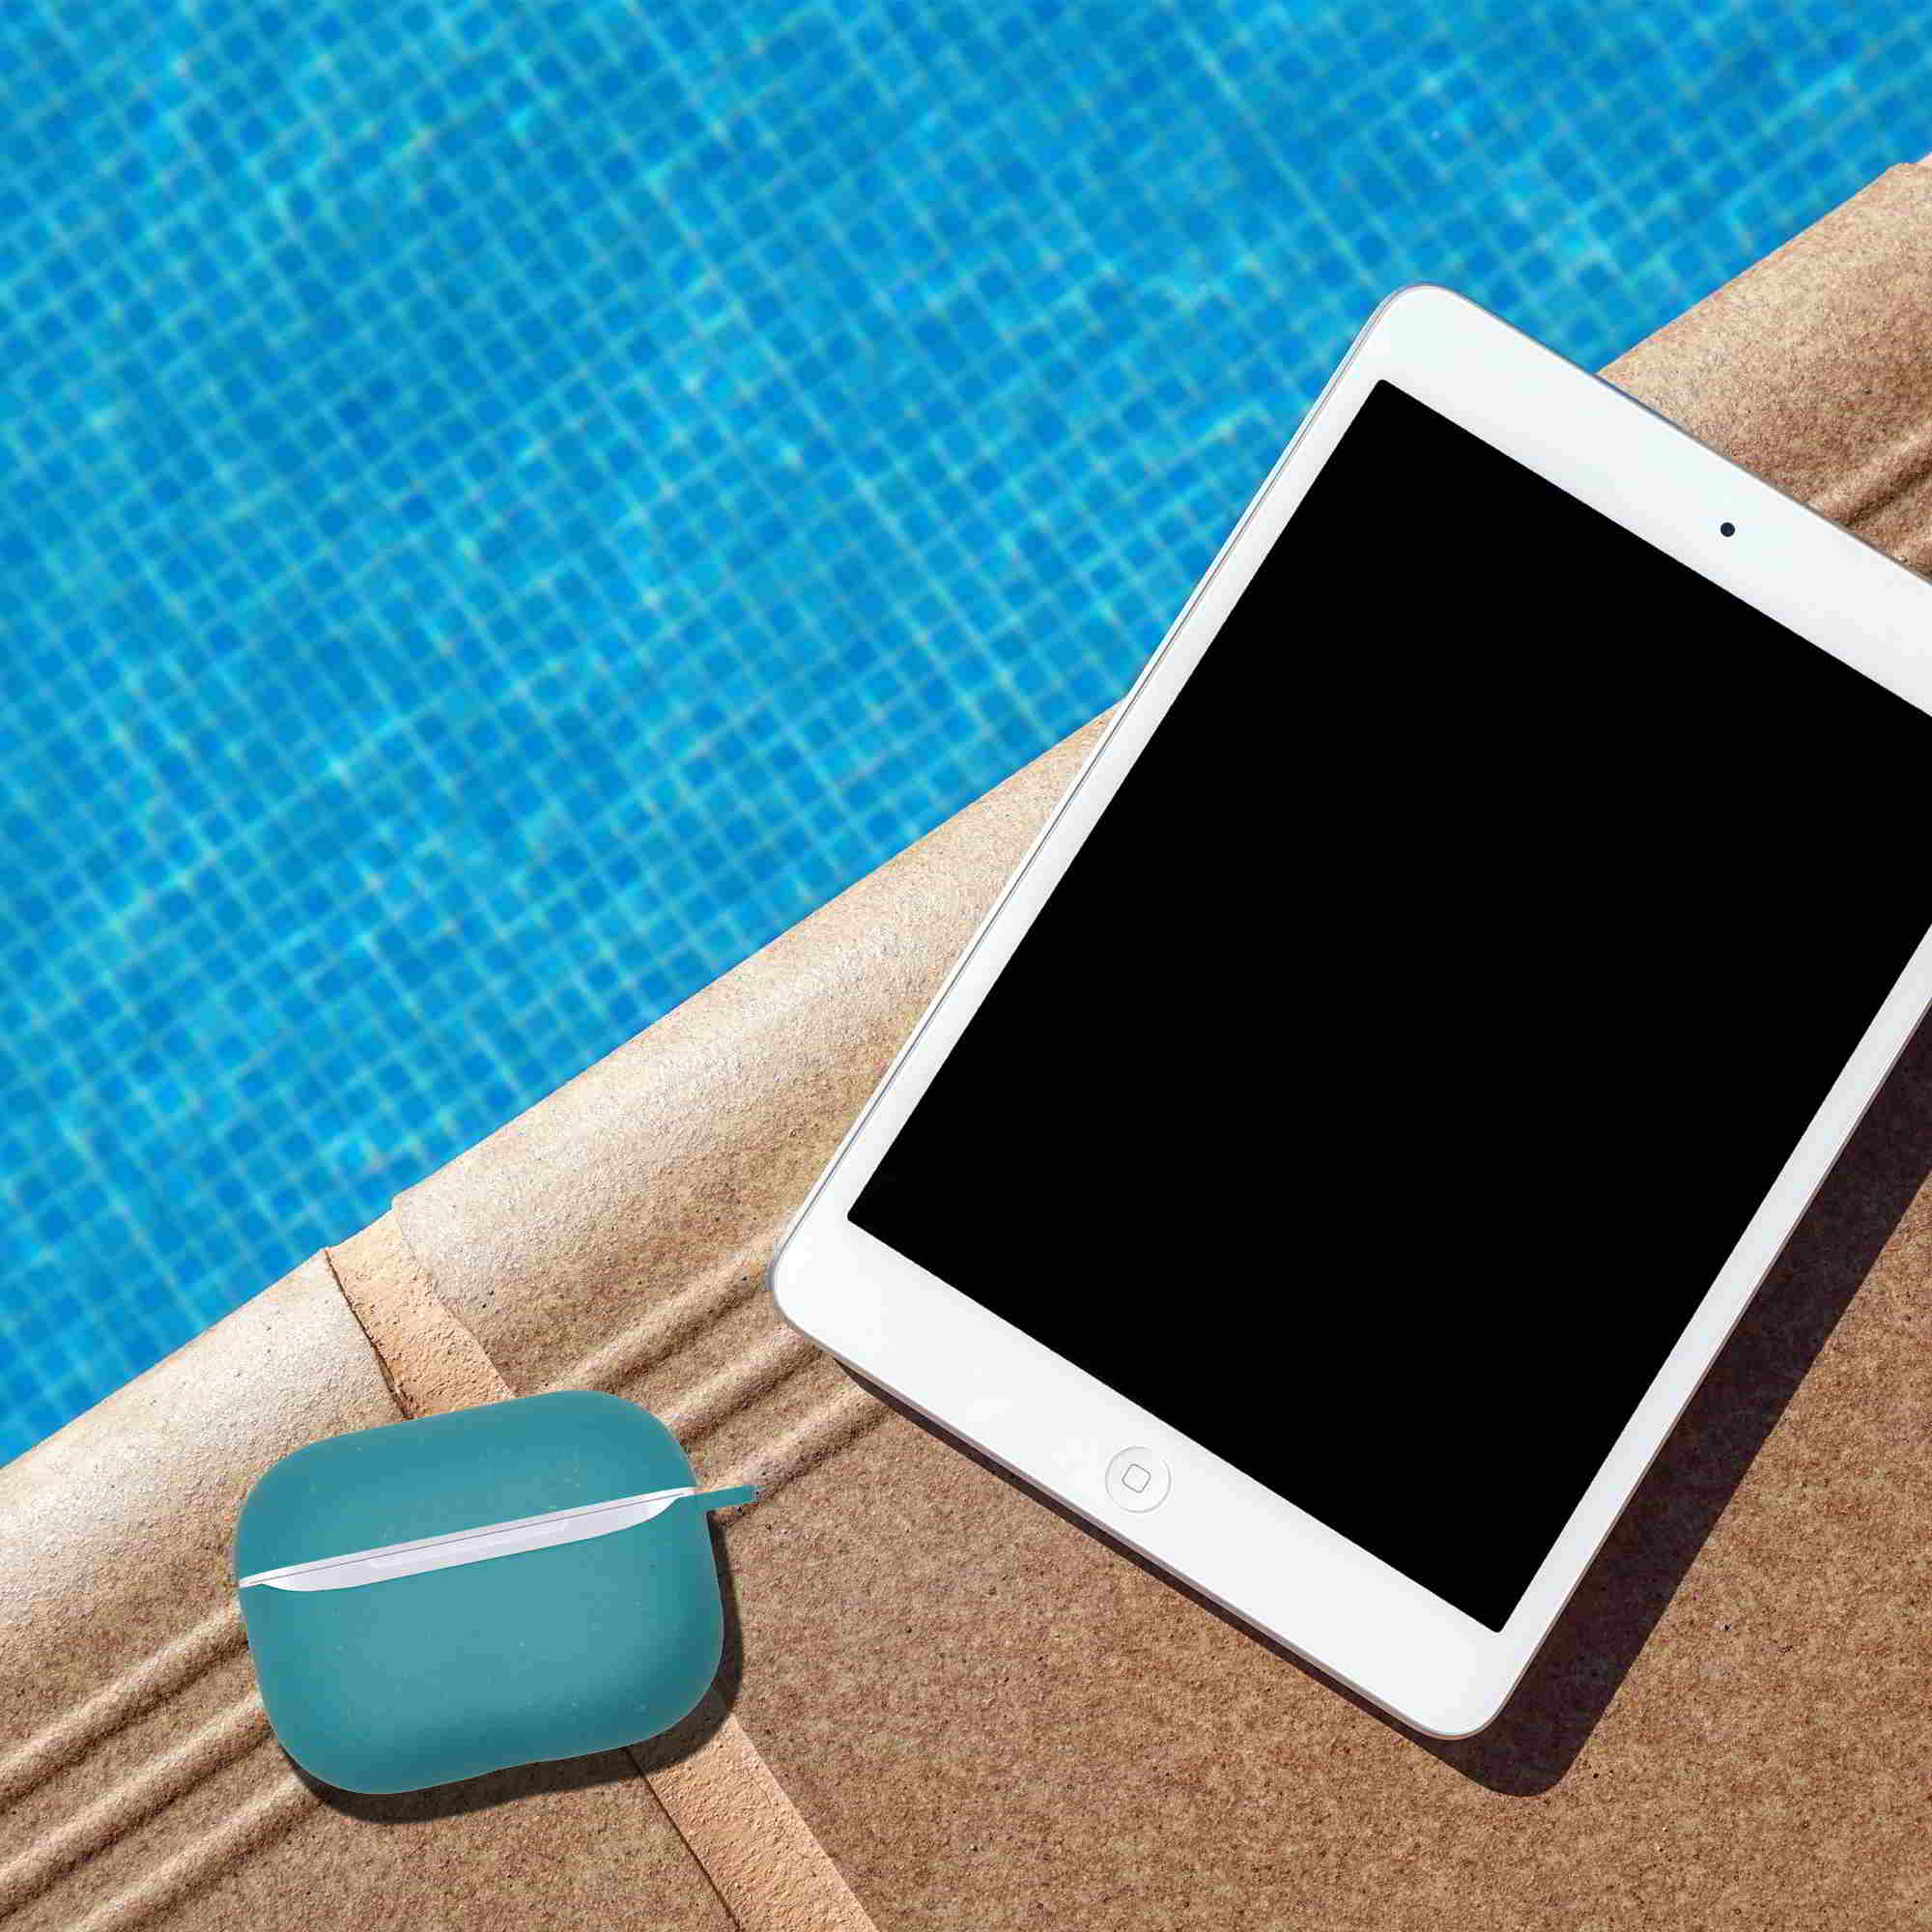 Apple Airpods Pro Ocean Blue Case y iPad junto a una piscina